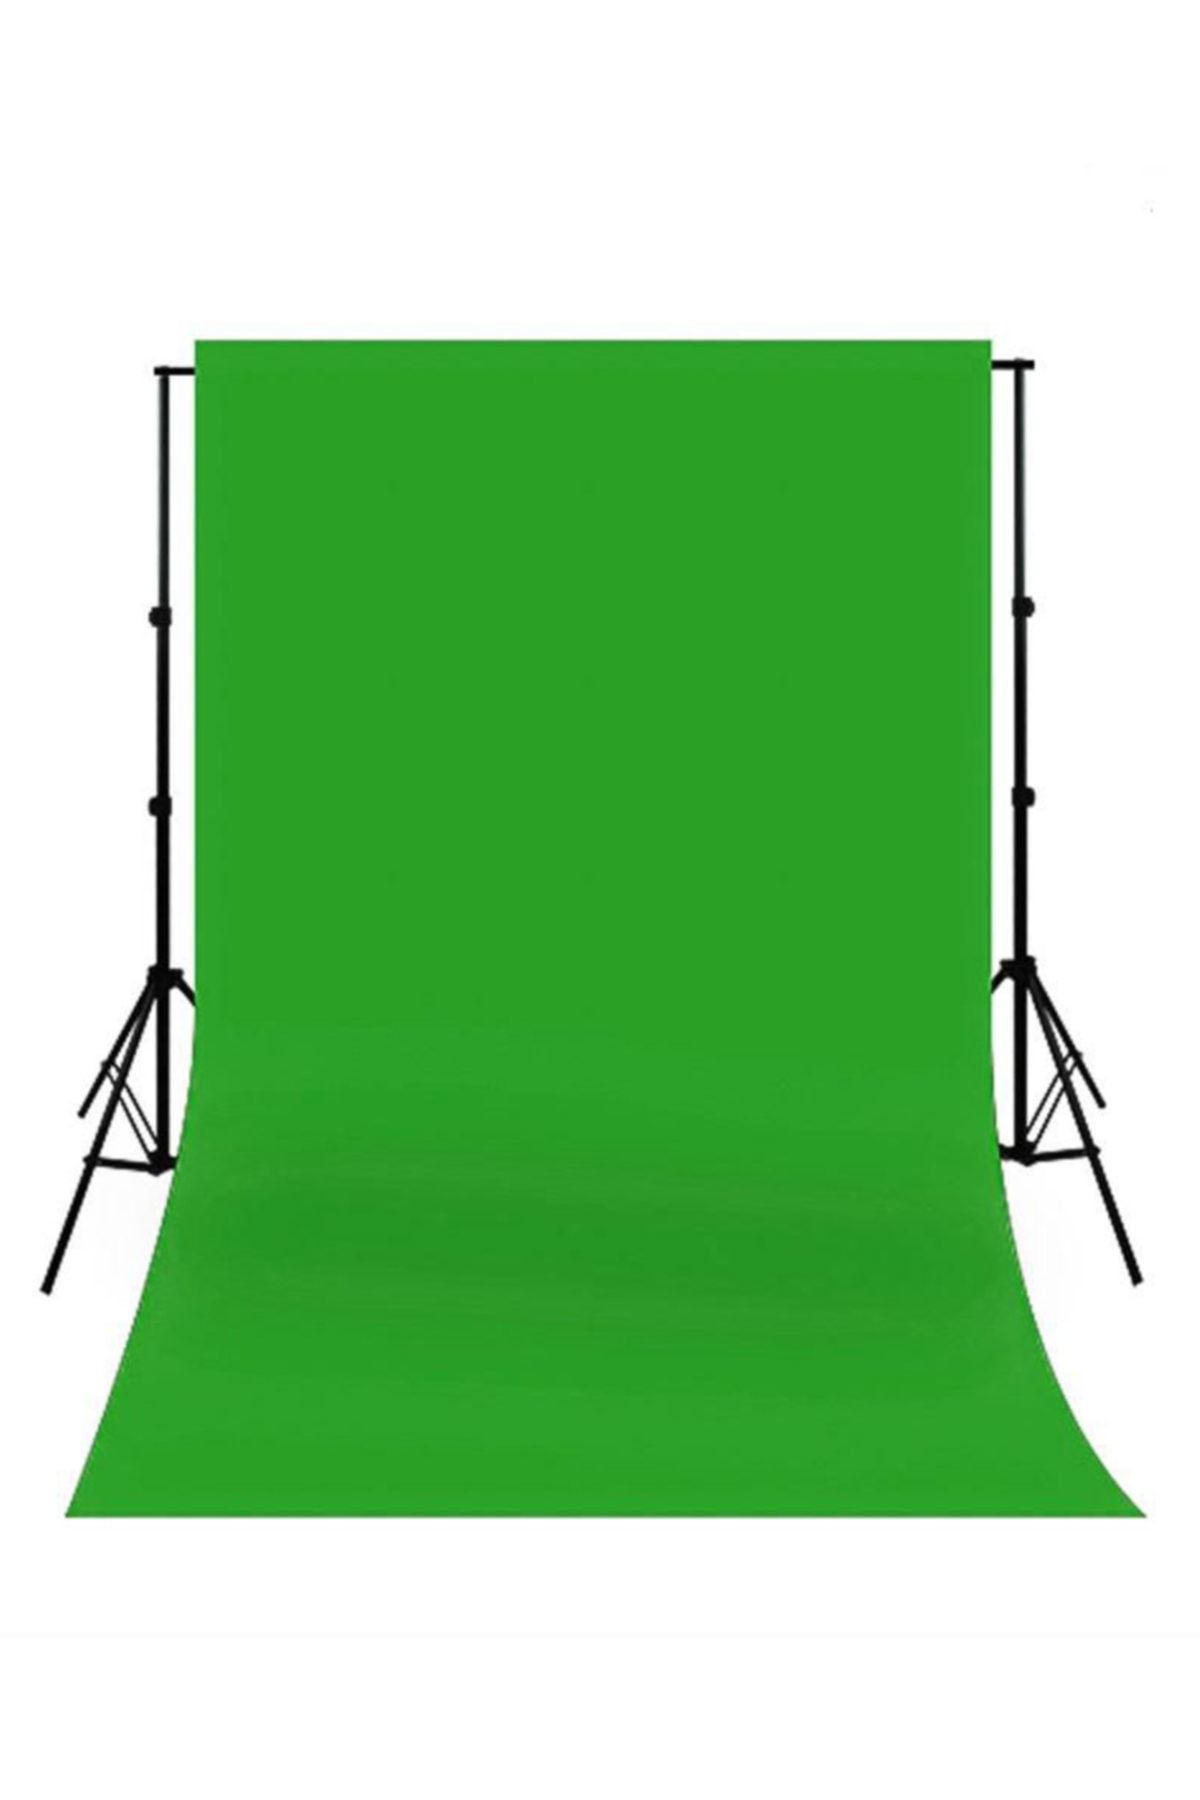 Deyatech Chromakey- Green Screen Greenbox Yeşil Fon Perde(3 X 3 M)